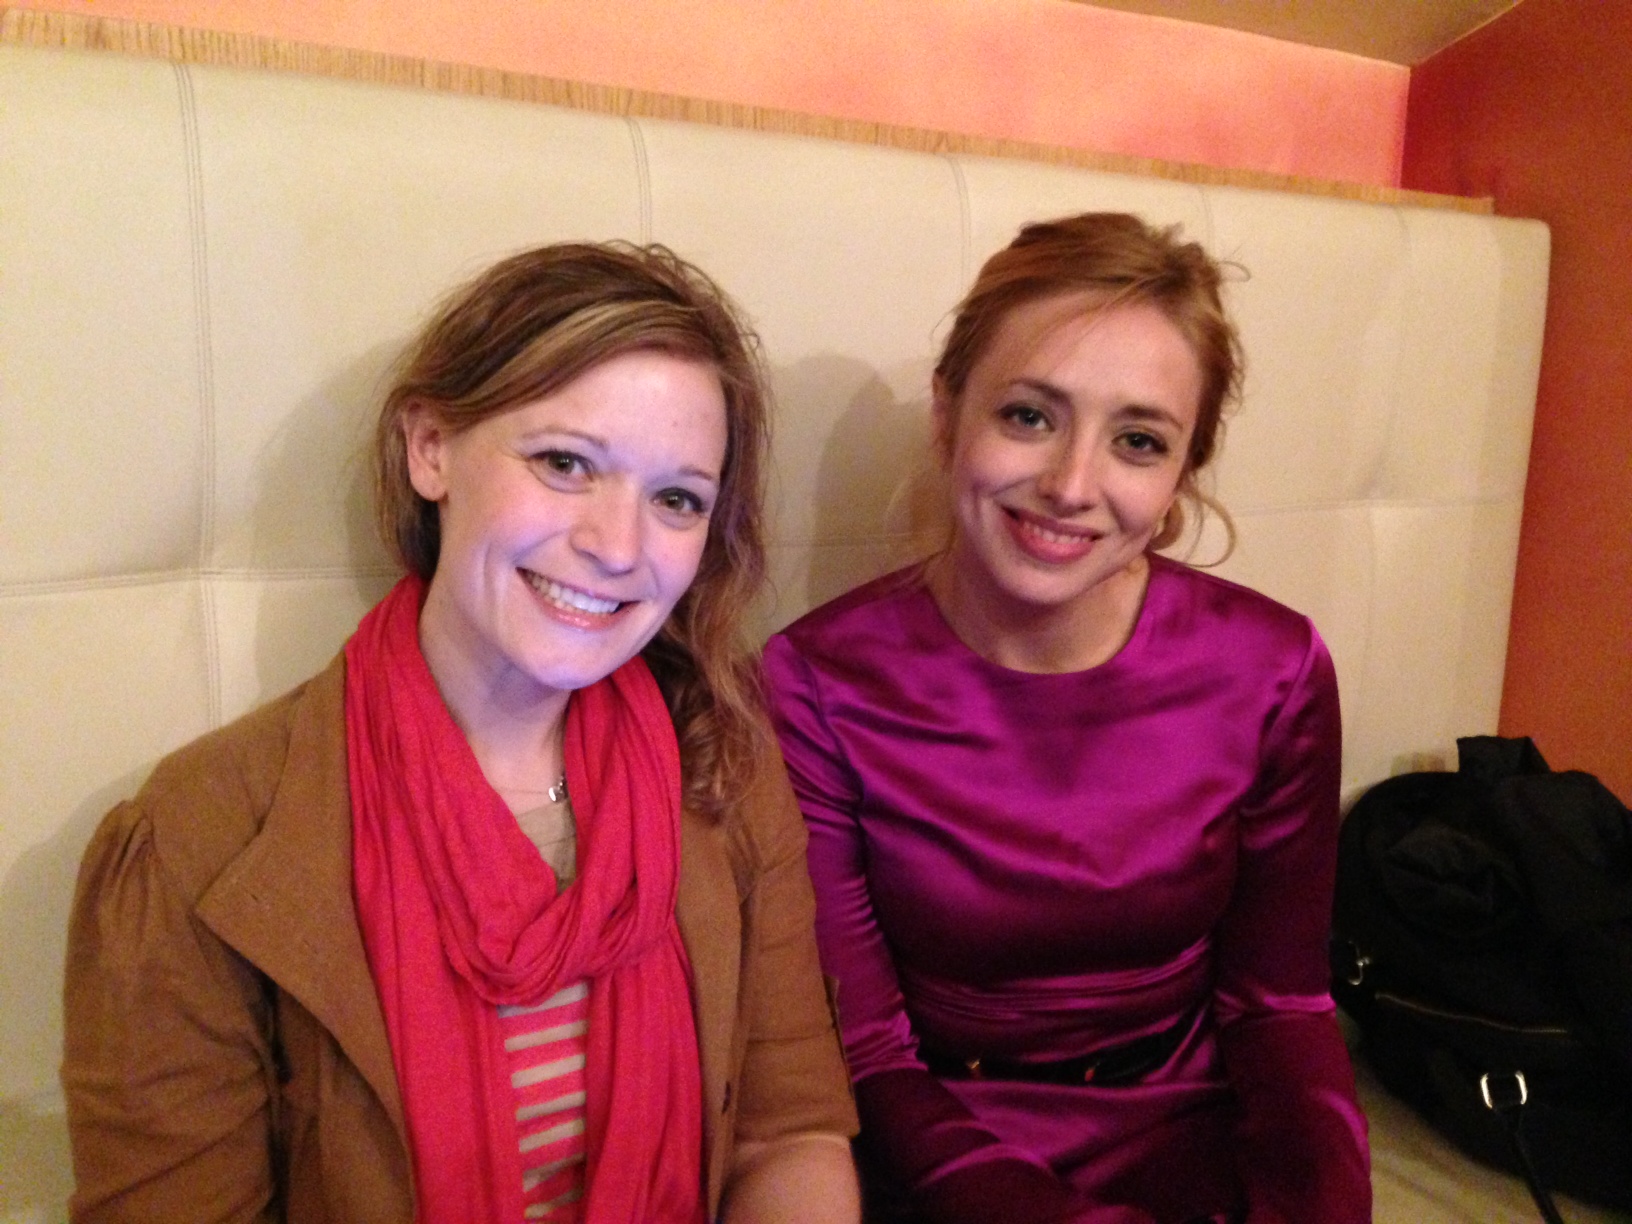 Being interviewed at Raindance Film Festival with Alisha Spielmann.